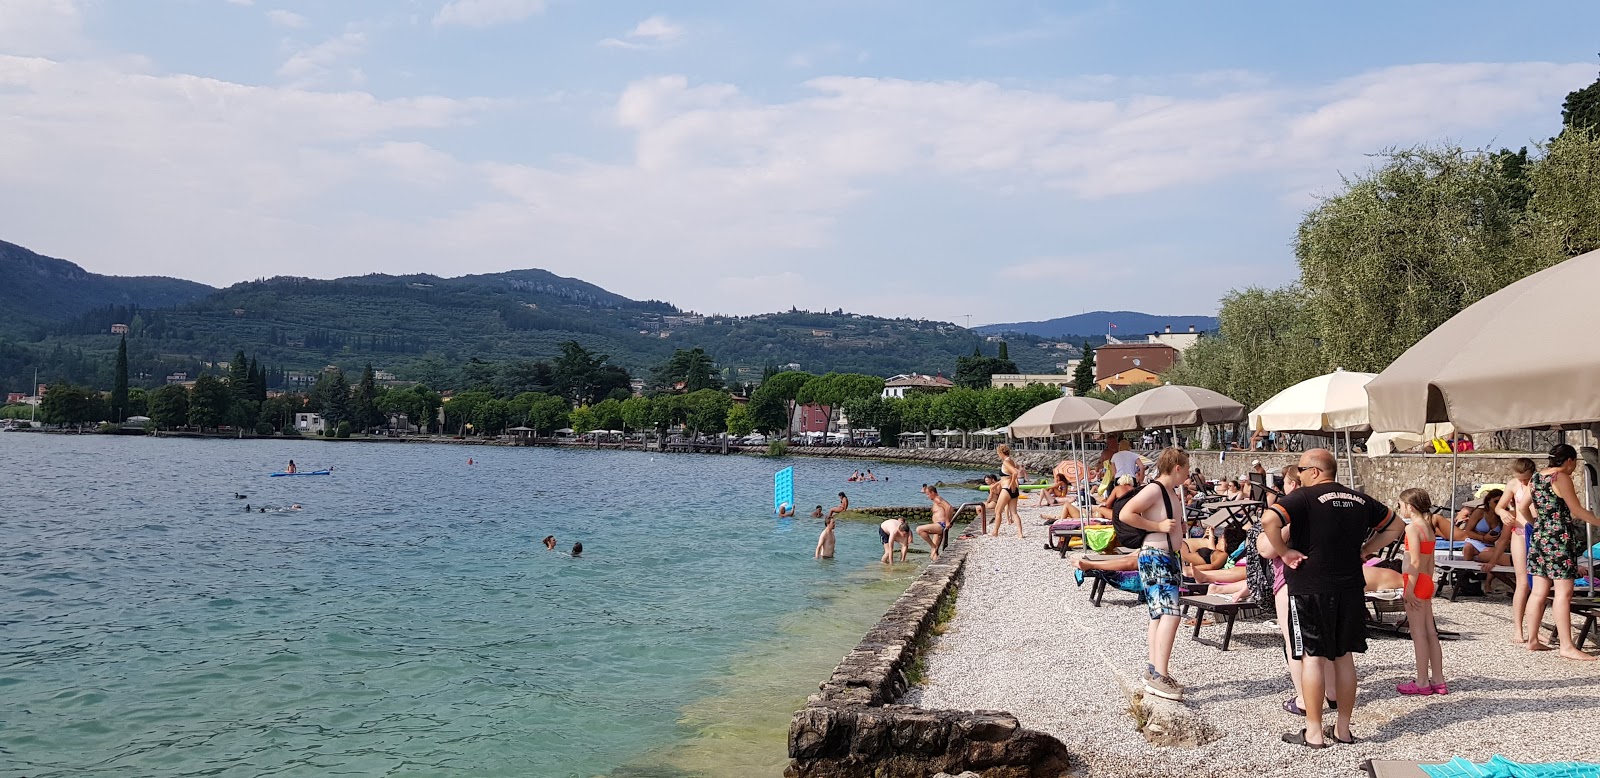 Foto de Spiaggia La Cavalla Garda - lugar popular entre os apreciadores de relaxamento